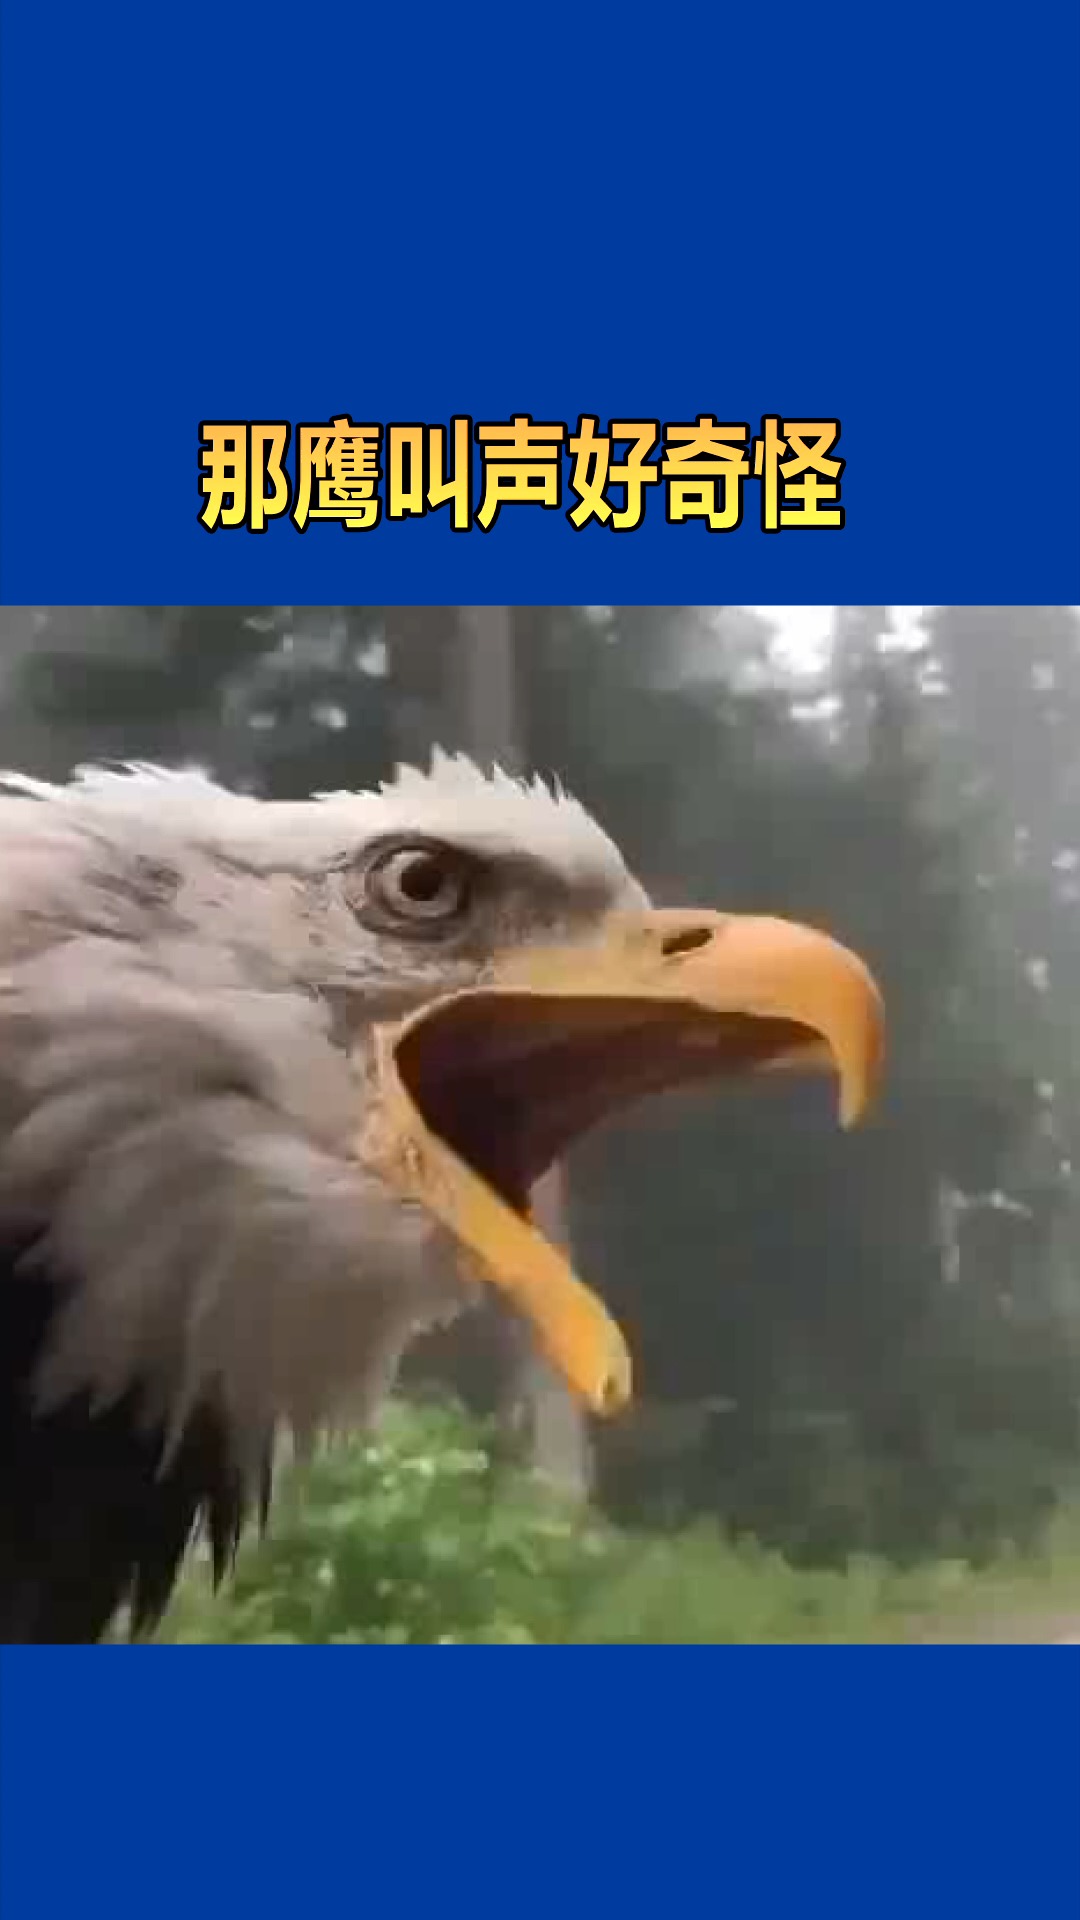 老鹰捕食声音图片